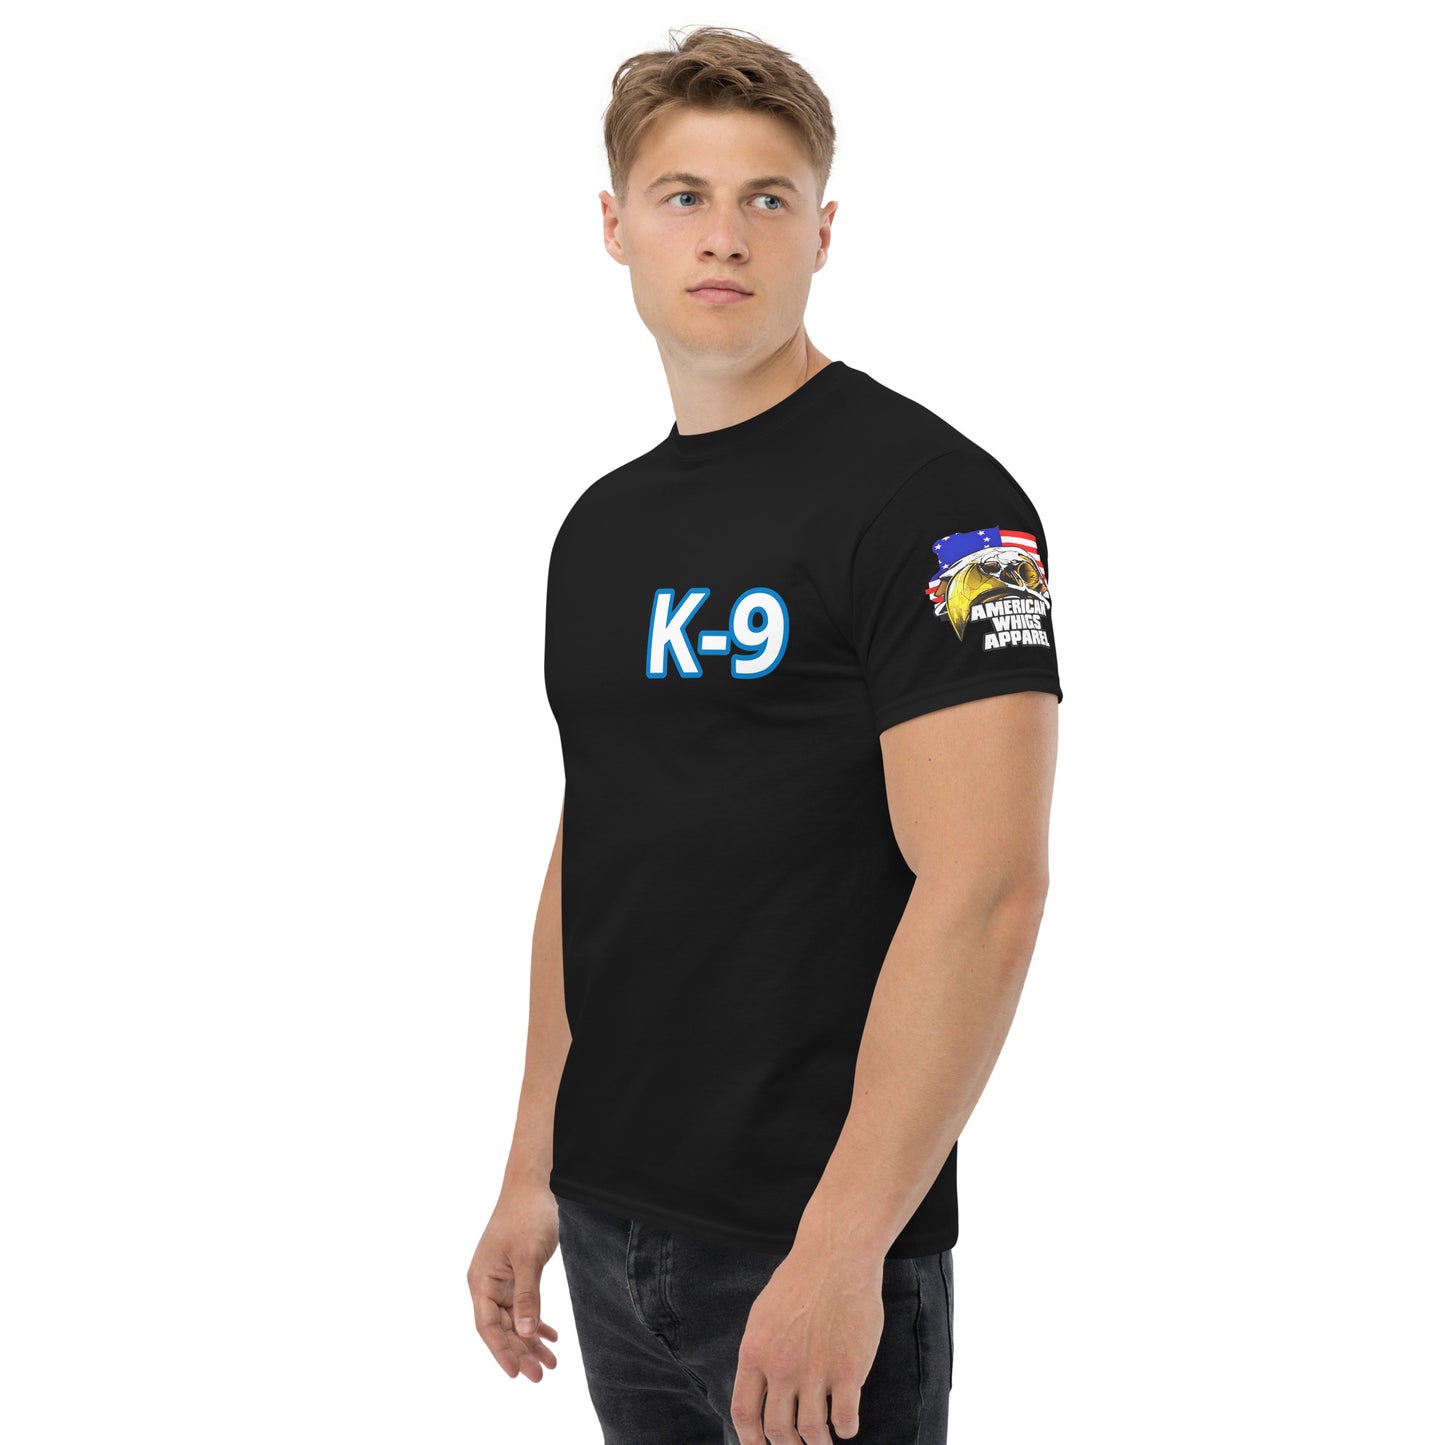 K-9 Fatigue Under-Shirt